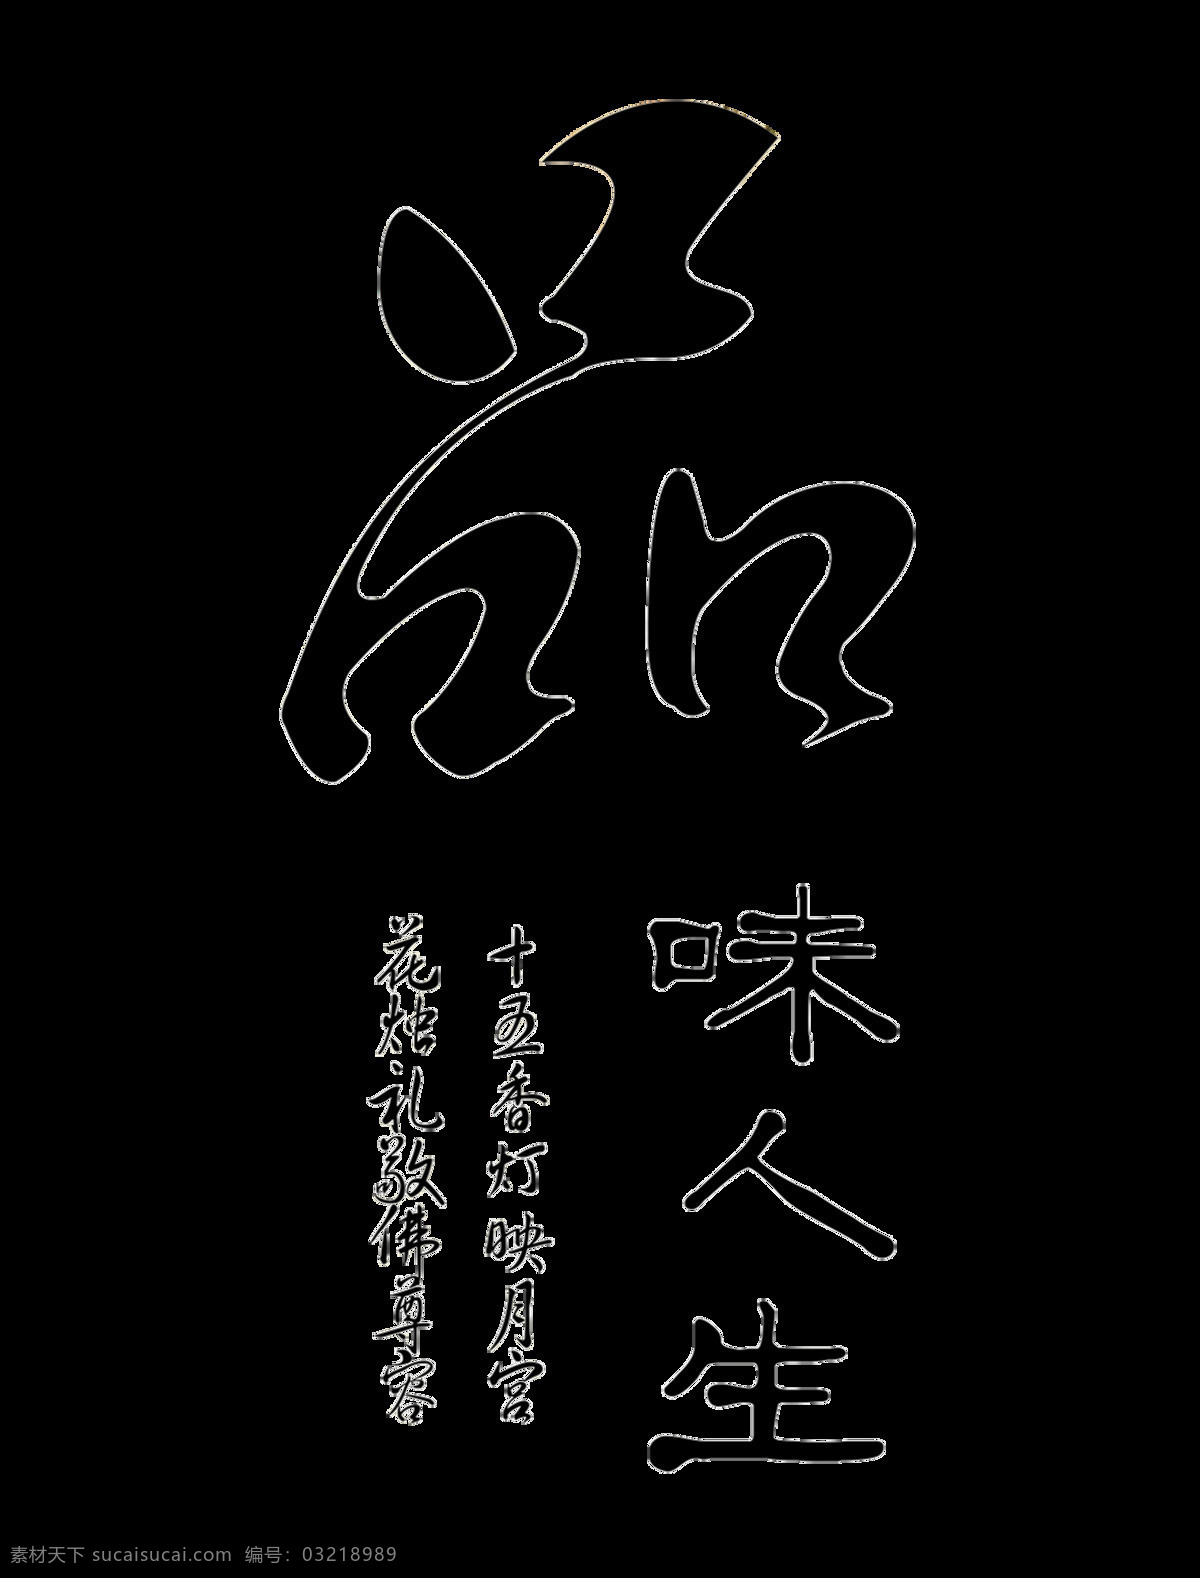 品味 人生 中国 风 艺术 字 中国风 古典 字体 品味人生 意境 古风 艺术字 海报